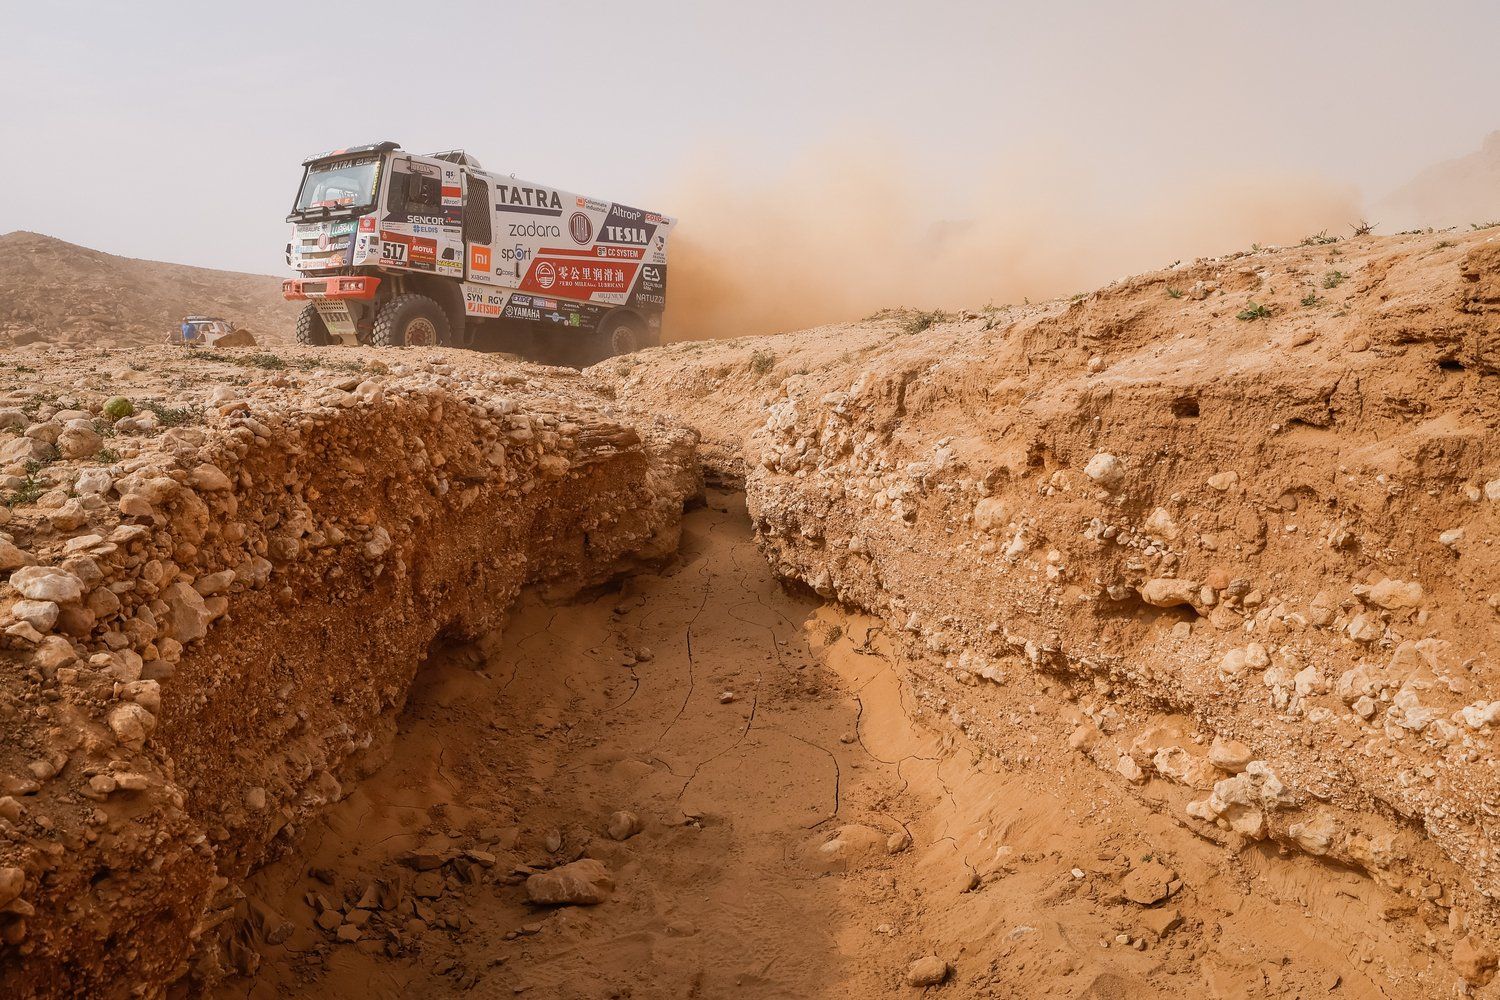 The Dakar Rally Raid